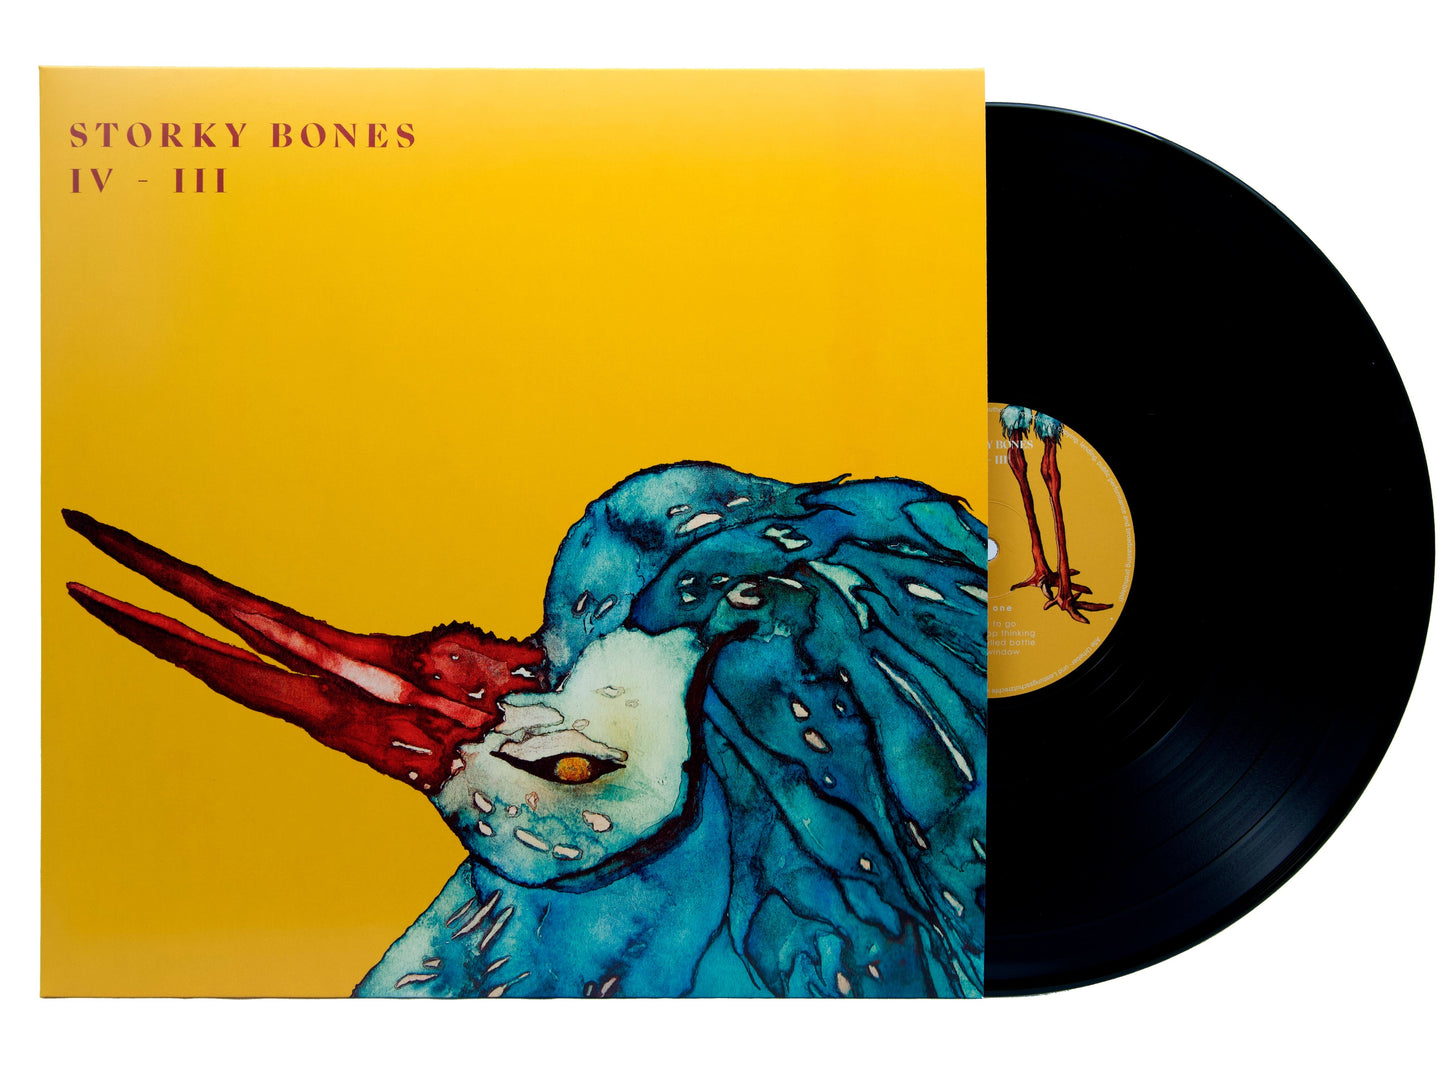 Kopie von Storky Bones Album Vinyl "IV - III"